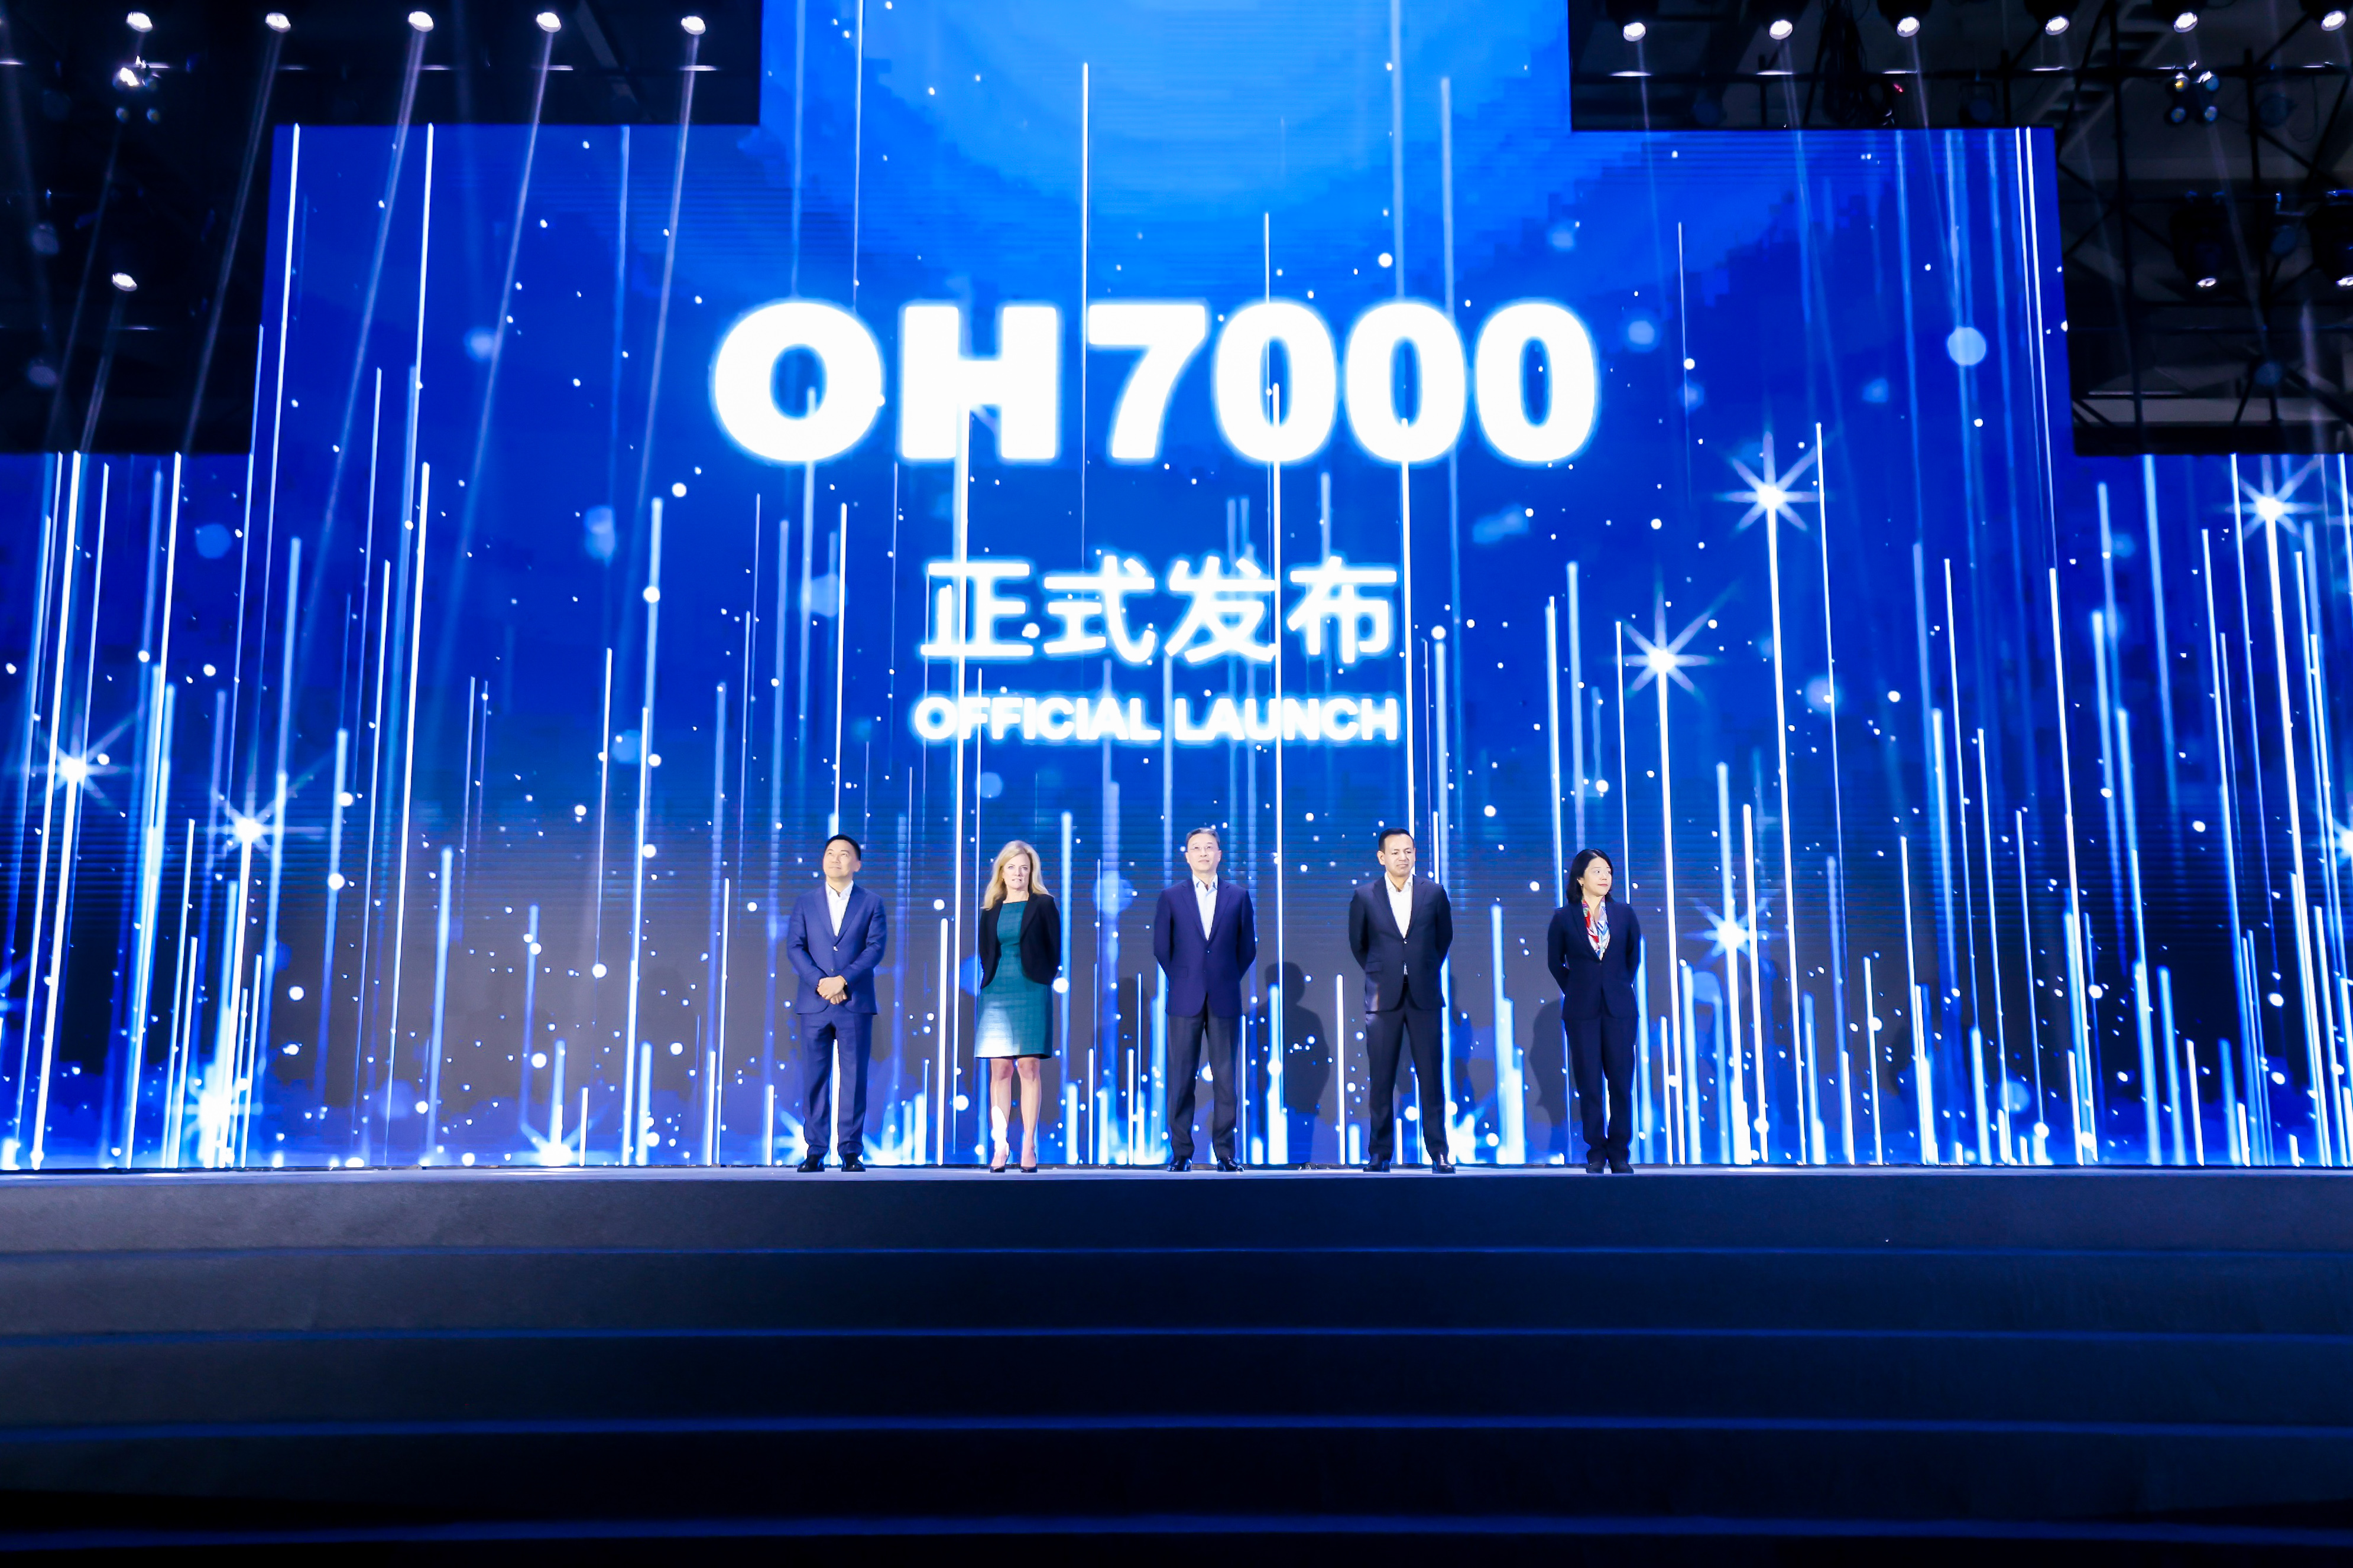 奥的斯机电重磅发布新一代智慧互联电梯OH7000